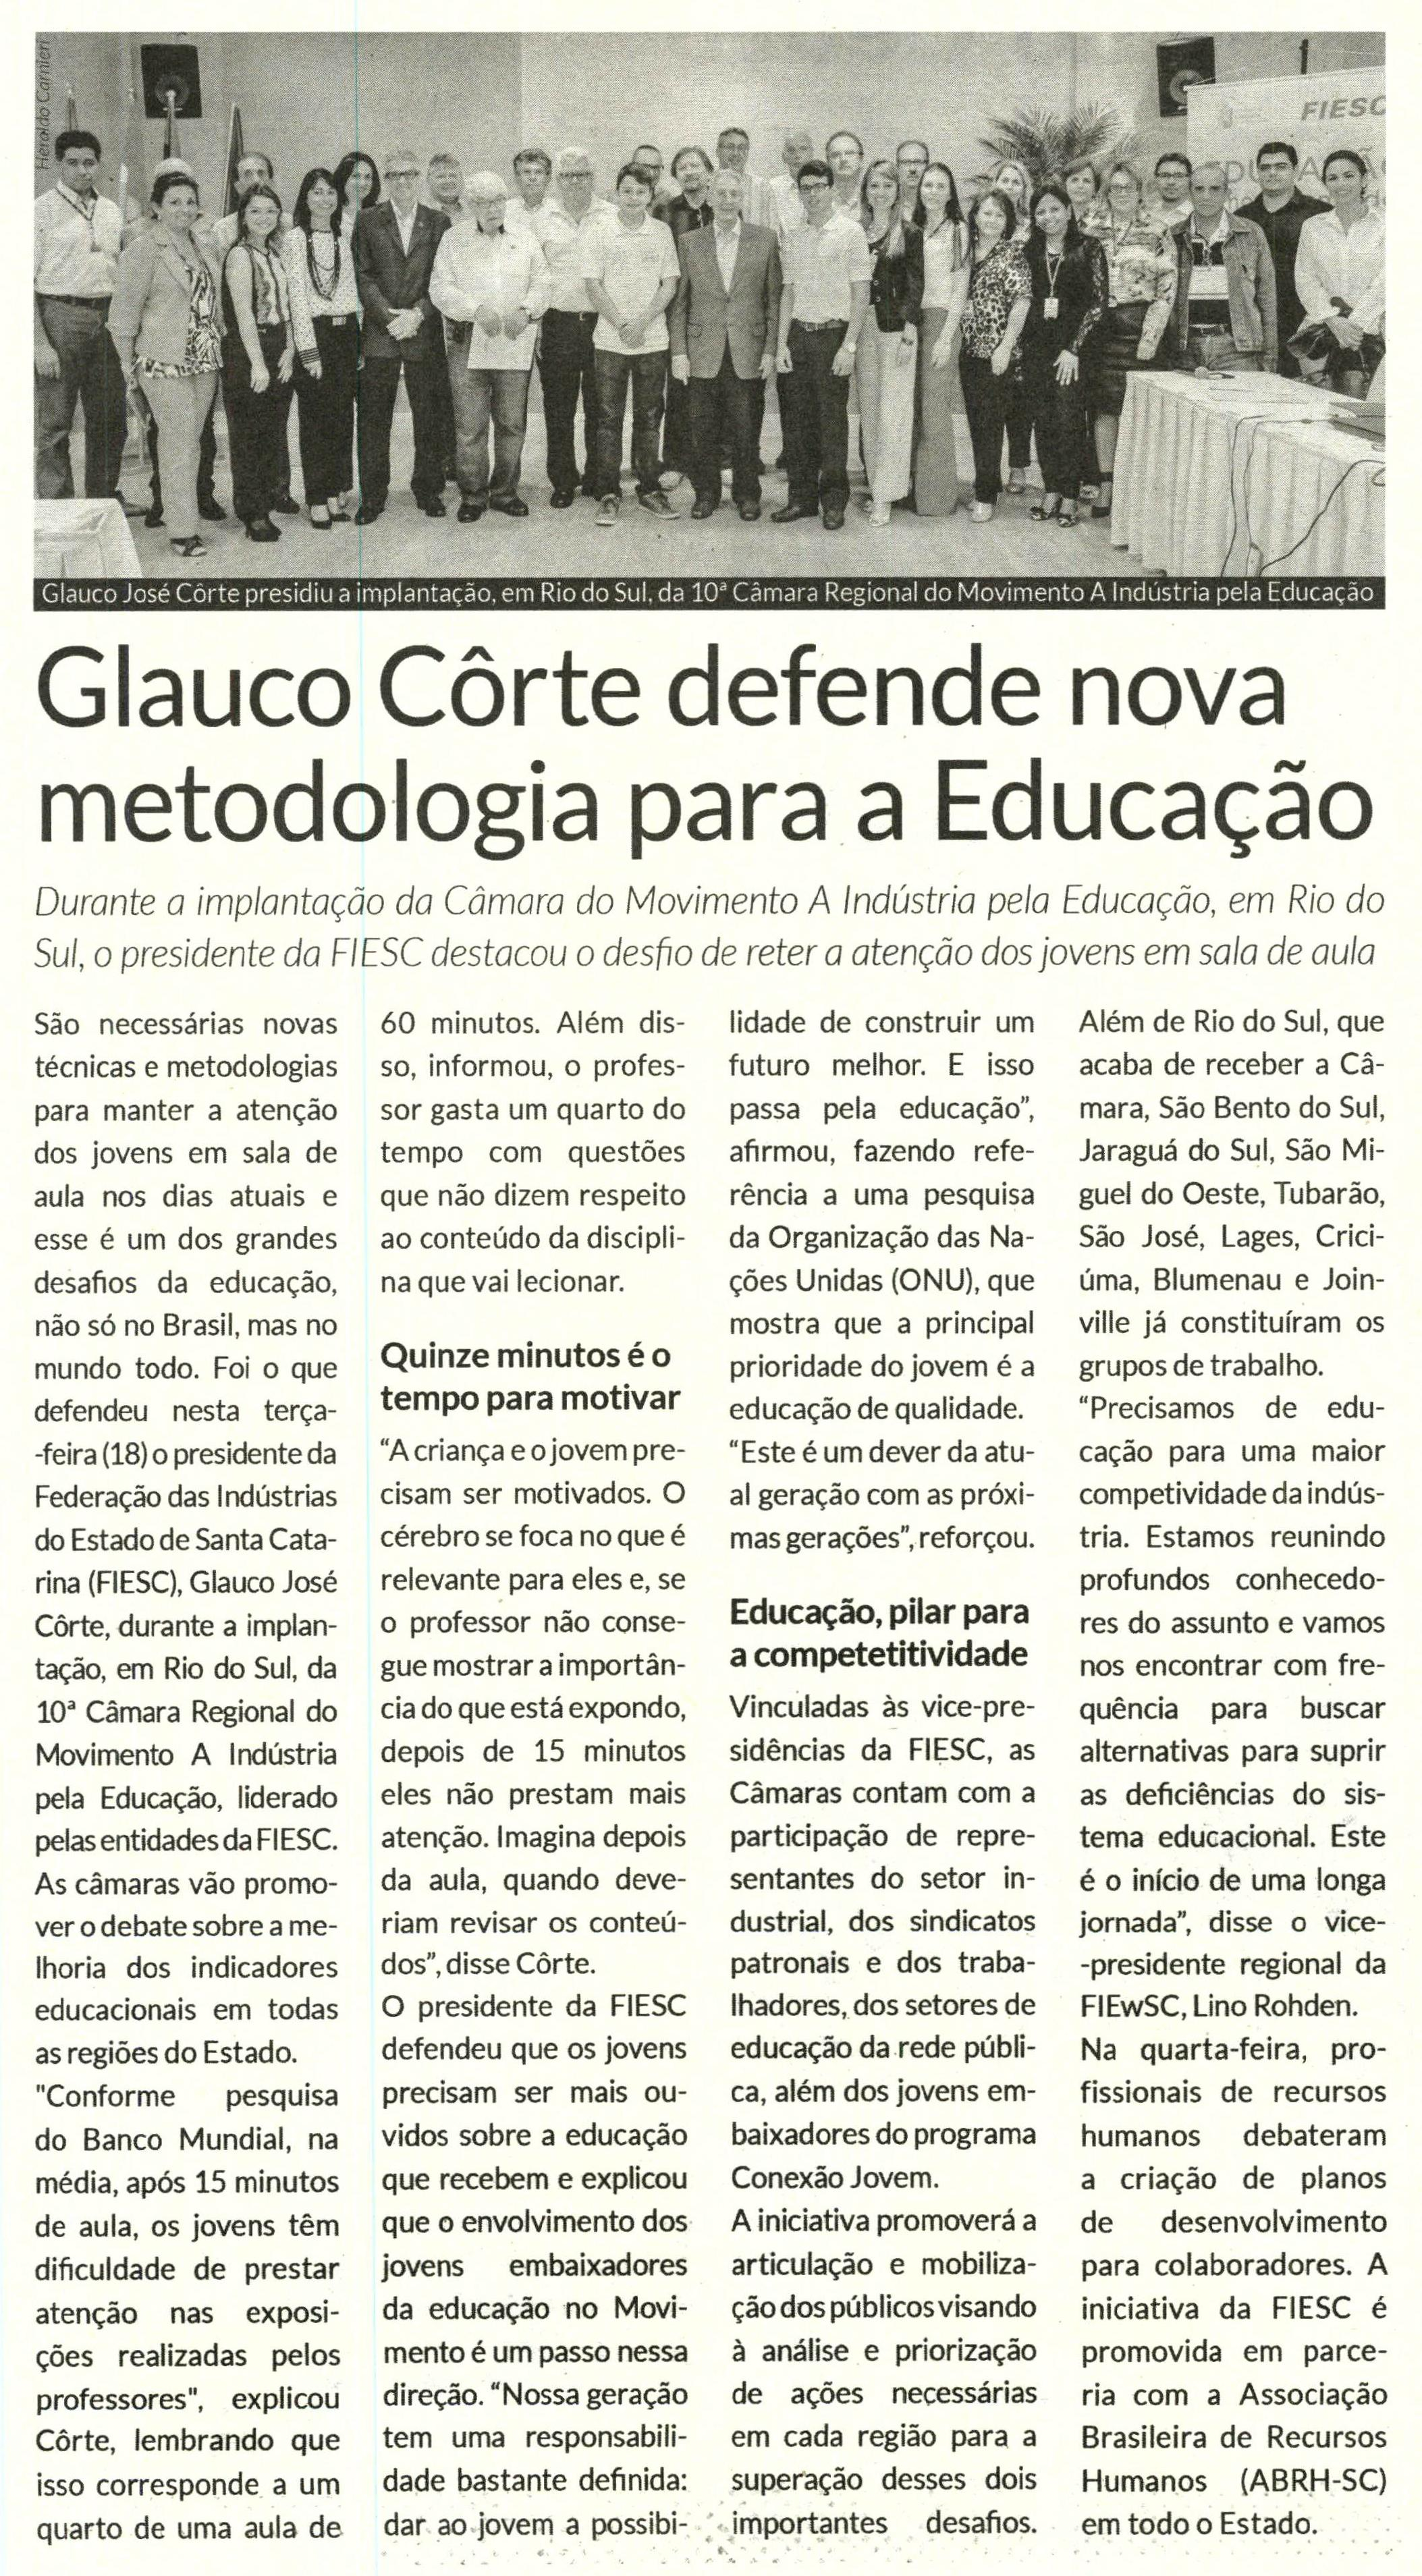 Título: Glauco Côrte defende nova metodologia para a Educação - Data: 27/08/2015 - Veículo: